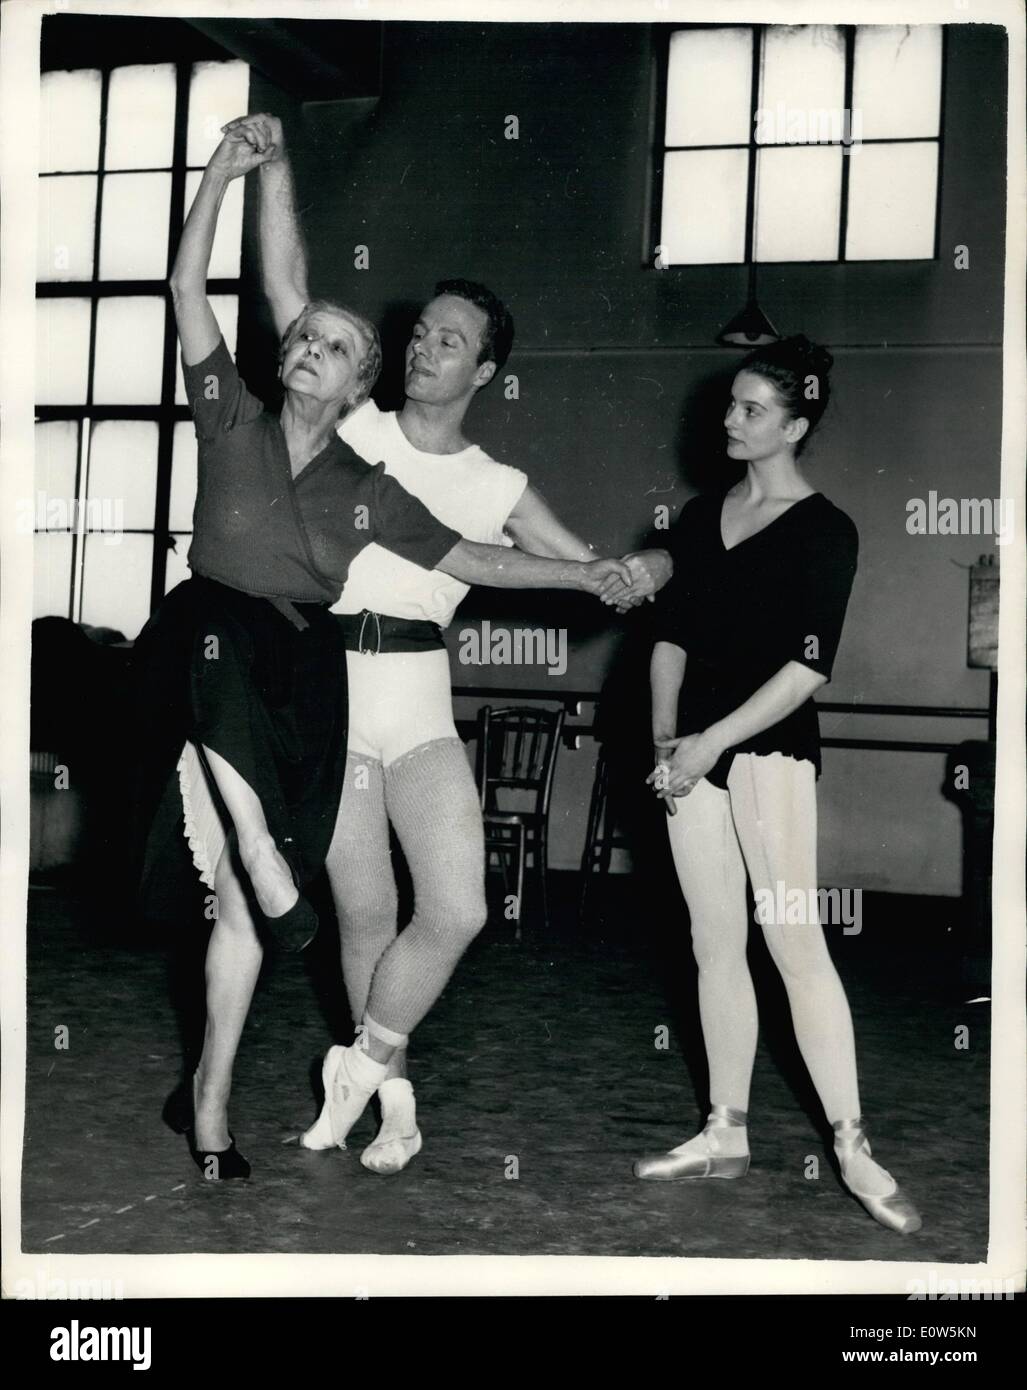 Sept. 09, 1961-70 - Jahr-alten ehemaligen Ballettstar John Gilpin lehrt die Rolle des Harlekin: 70-j hrige Madame Tamara Karsavina, ehemalige Ballett "Le Garnaval", John Gilpin, die Rolle des Harlekin tanzen zu lehren. Das Ballett wird durch das Western-Theater-Ballett am Donnerstag, den 14. September, am Sadler es Wells Theater durchgeführt werden. '' Le Garnaval'' wurde ursprünglich im Jahre 1910 und wurde zuerst von der Firma Diaghilev durchgeführt, wenn Harlekin durch NIjinaky und Columbine von Madame Karsavina getanzt wurde Stockfoto